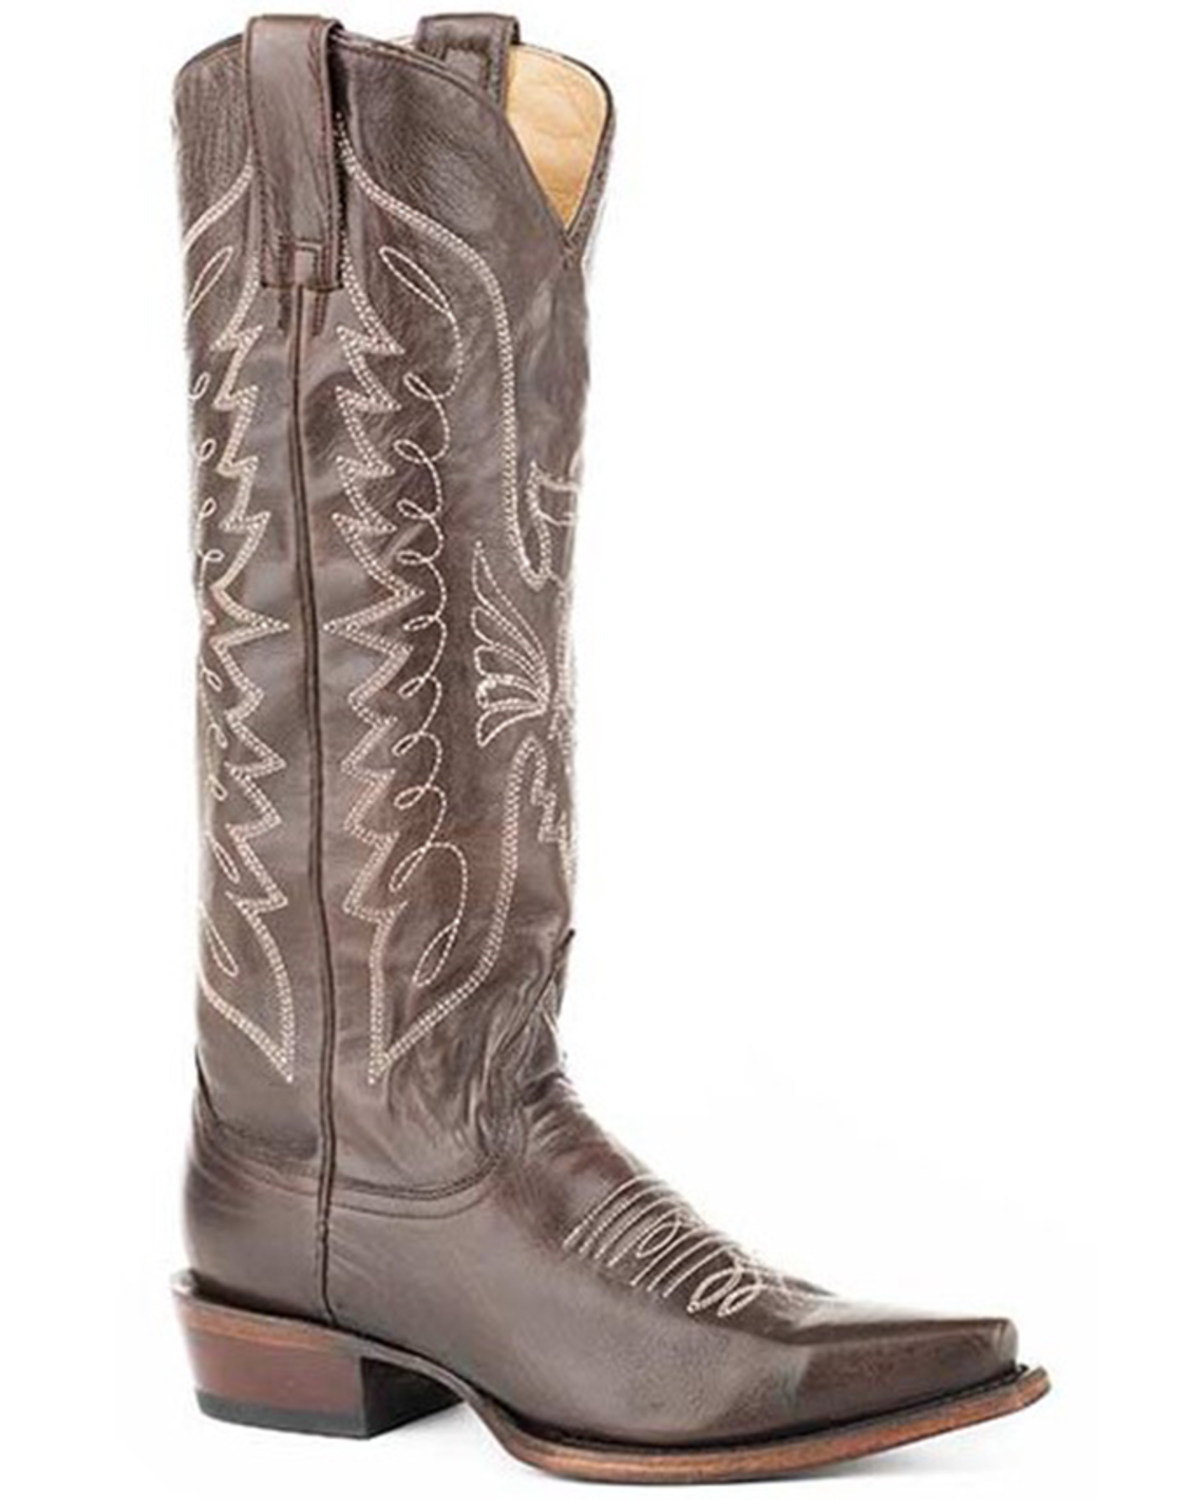 Stetson Women's Marisol Western Boots - Snip Toe